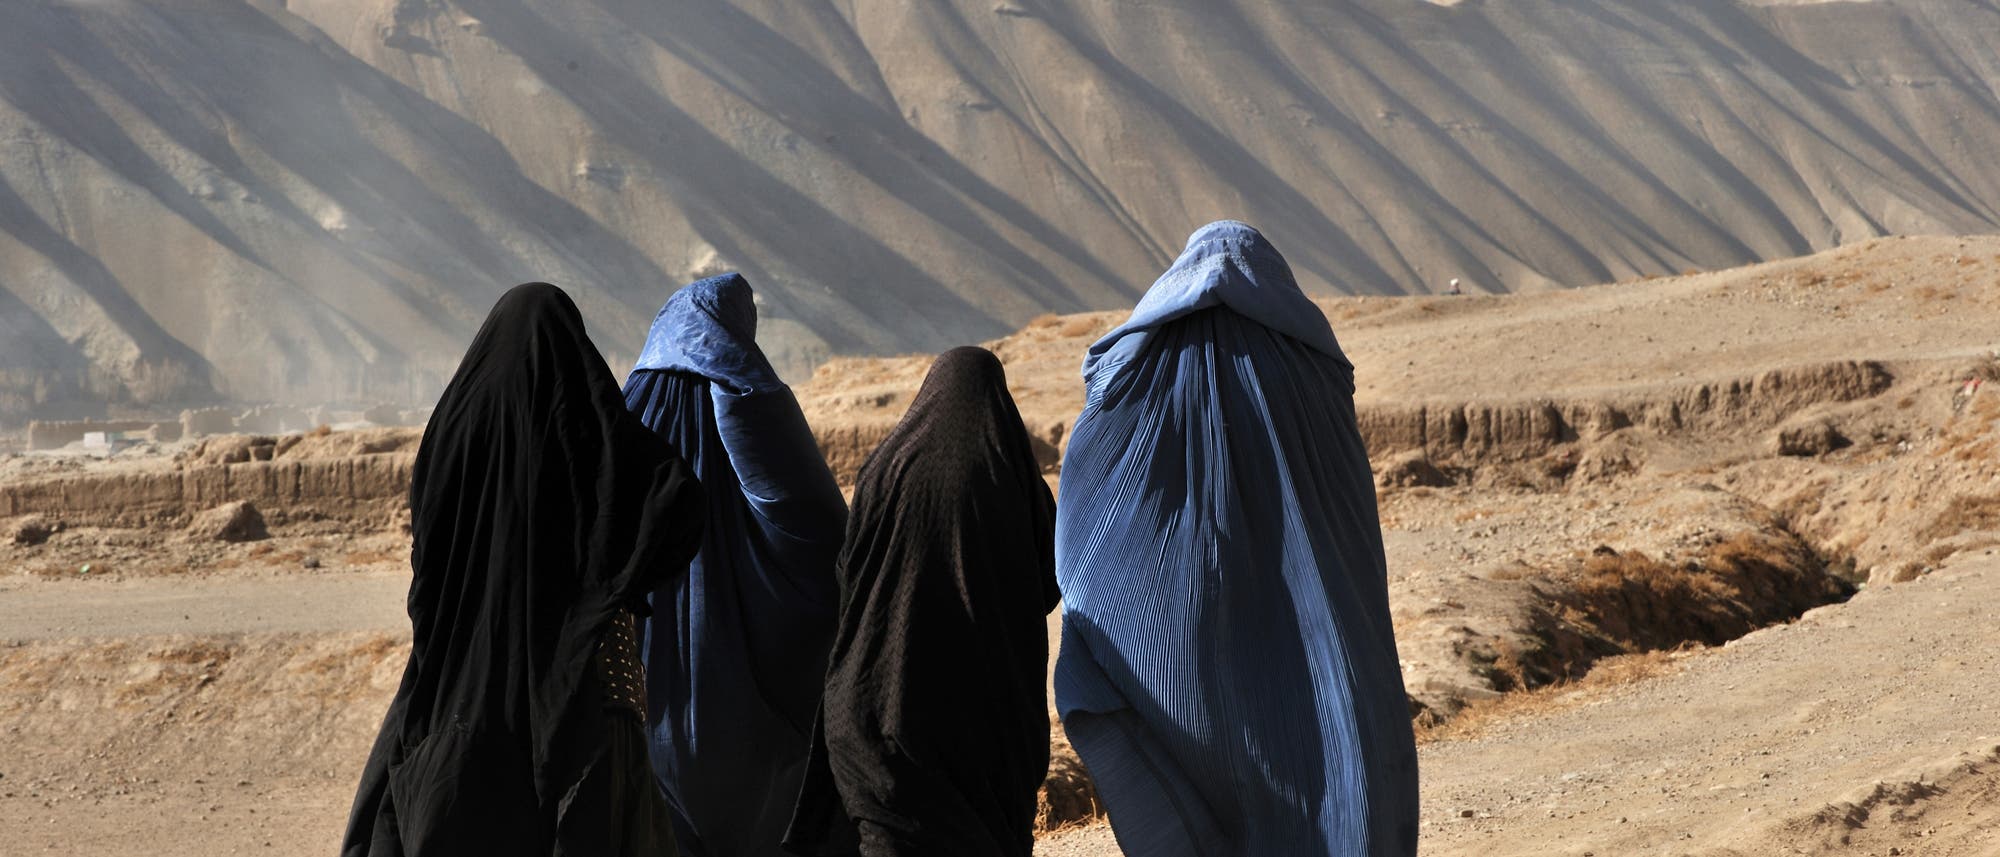 Vier verhüllte Frauen in der afghanischen Wüste